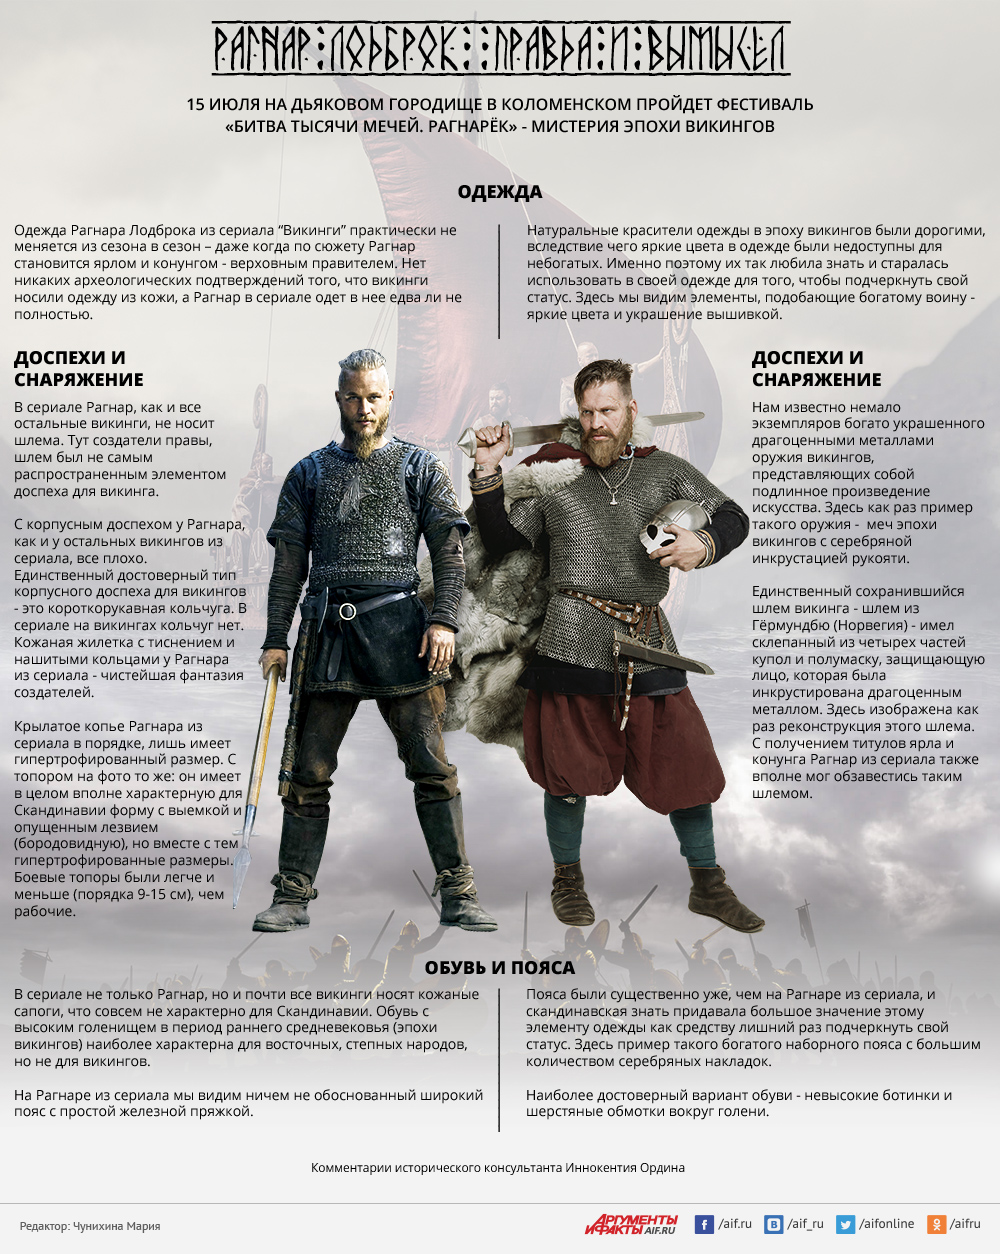 Сословный статус скандинавских ярлов. Викинг снаряжение средневековье. Скандинавия в эпоху викингов.